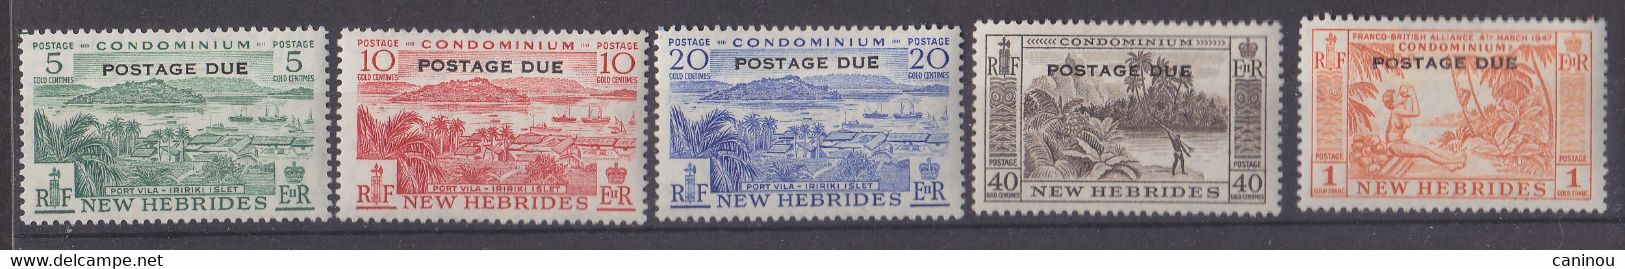 NOUVELLES-HEBRIDES Y & T TAXE 41-45 PAYSAGE LEGENDE ANGLAISE NEW HEBRIDES POSTAGE DUE 1957 NEUFS AVEC CHARNIERES - Portomarken